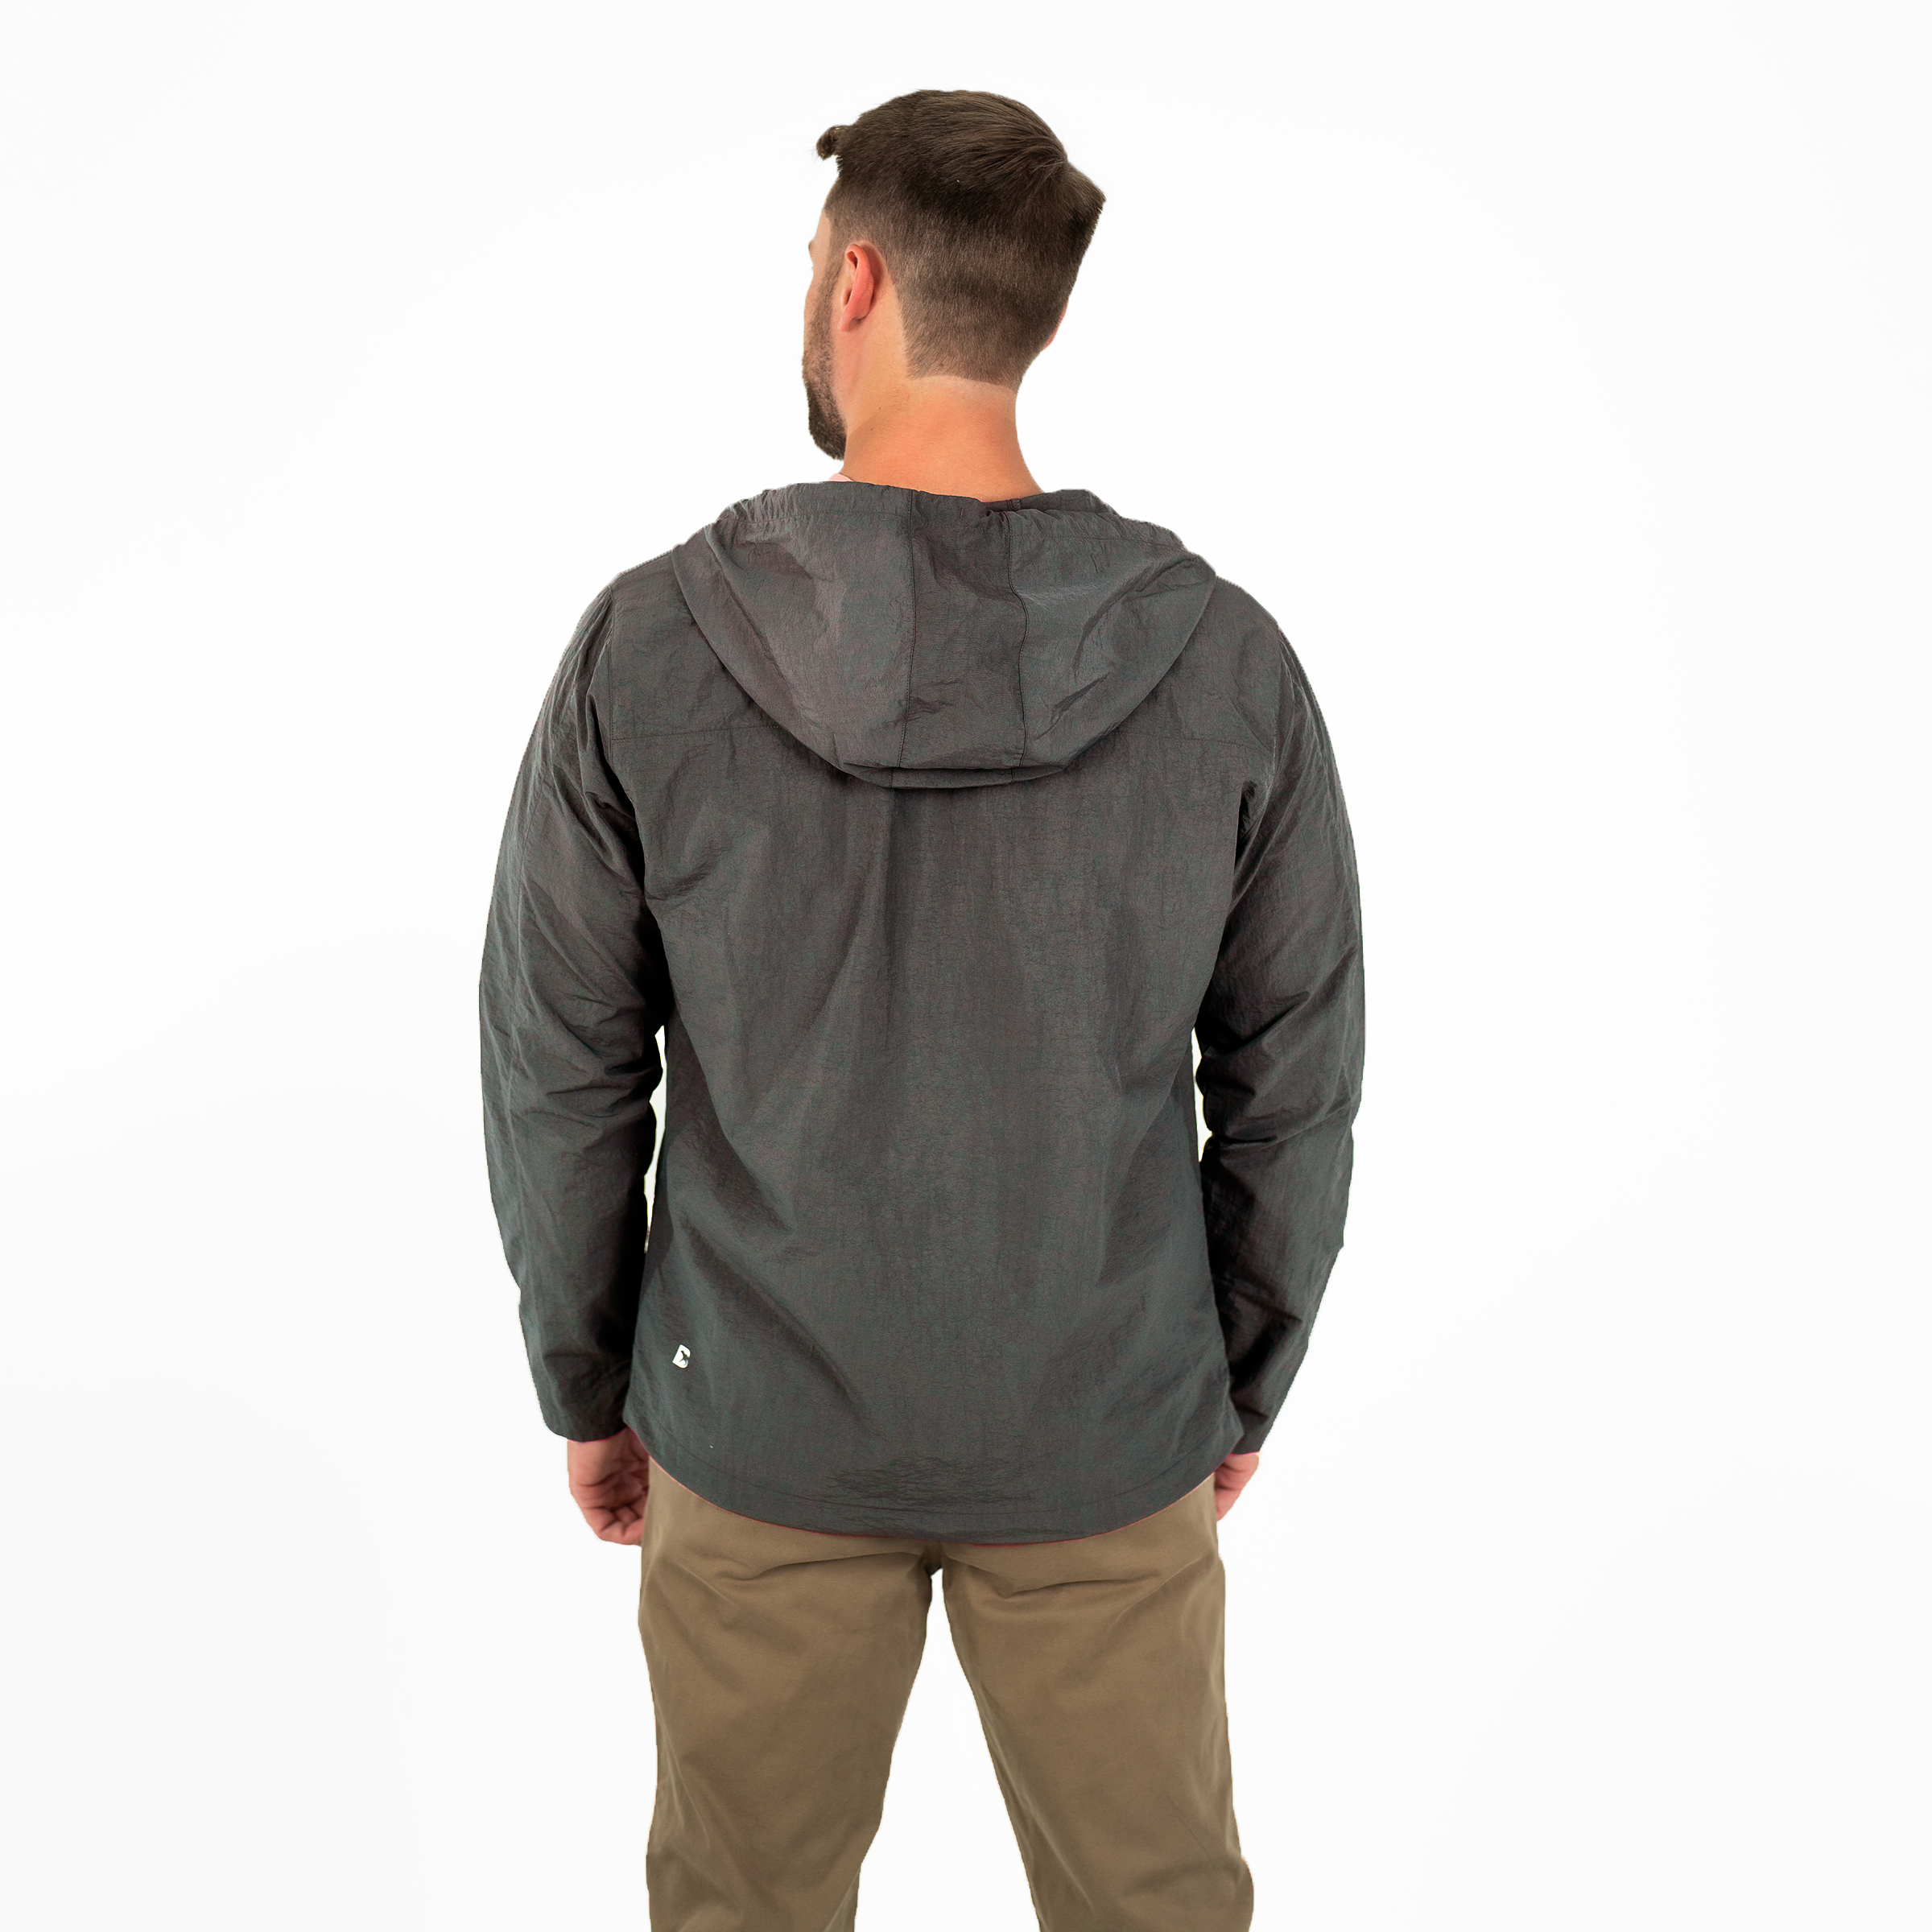 Windbreaker Jacket in Graphite grey back on model 